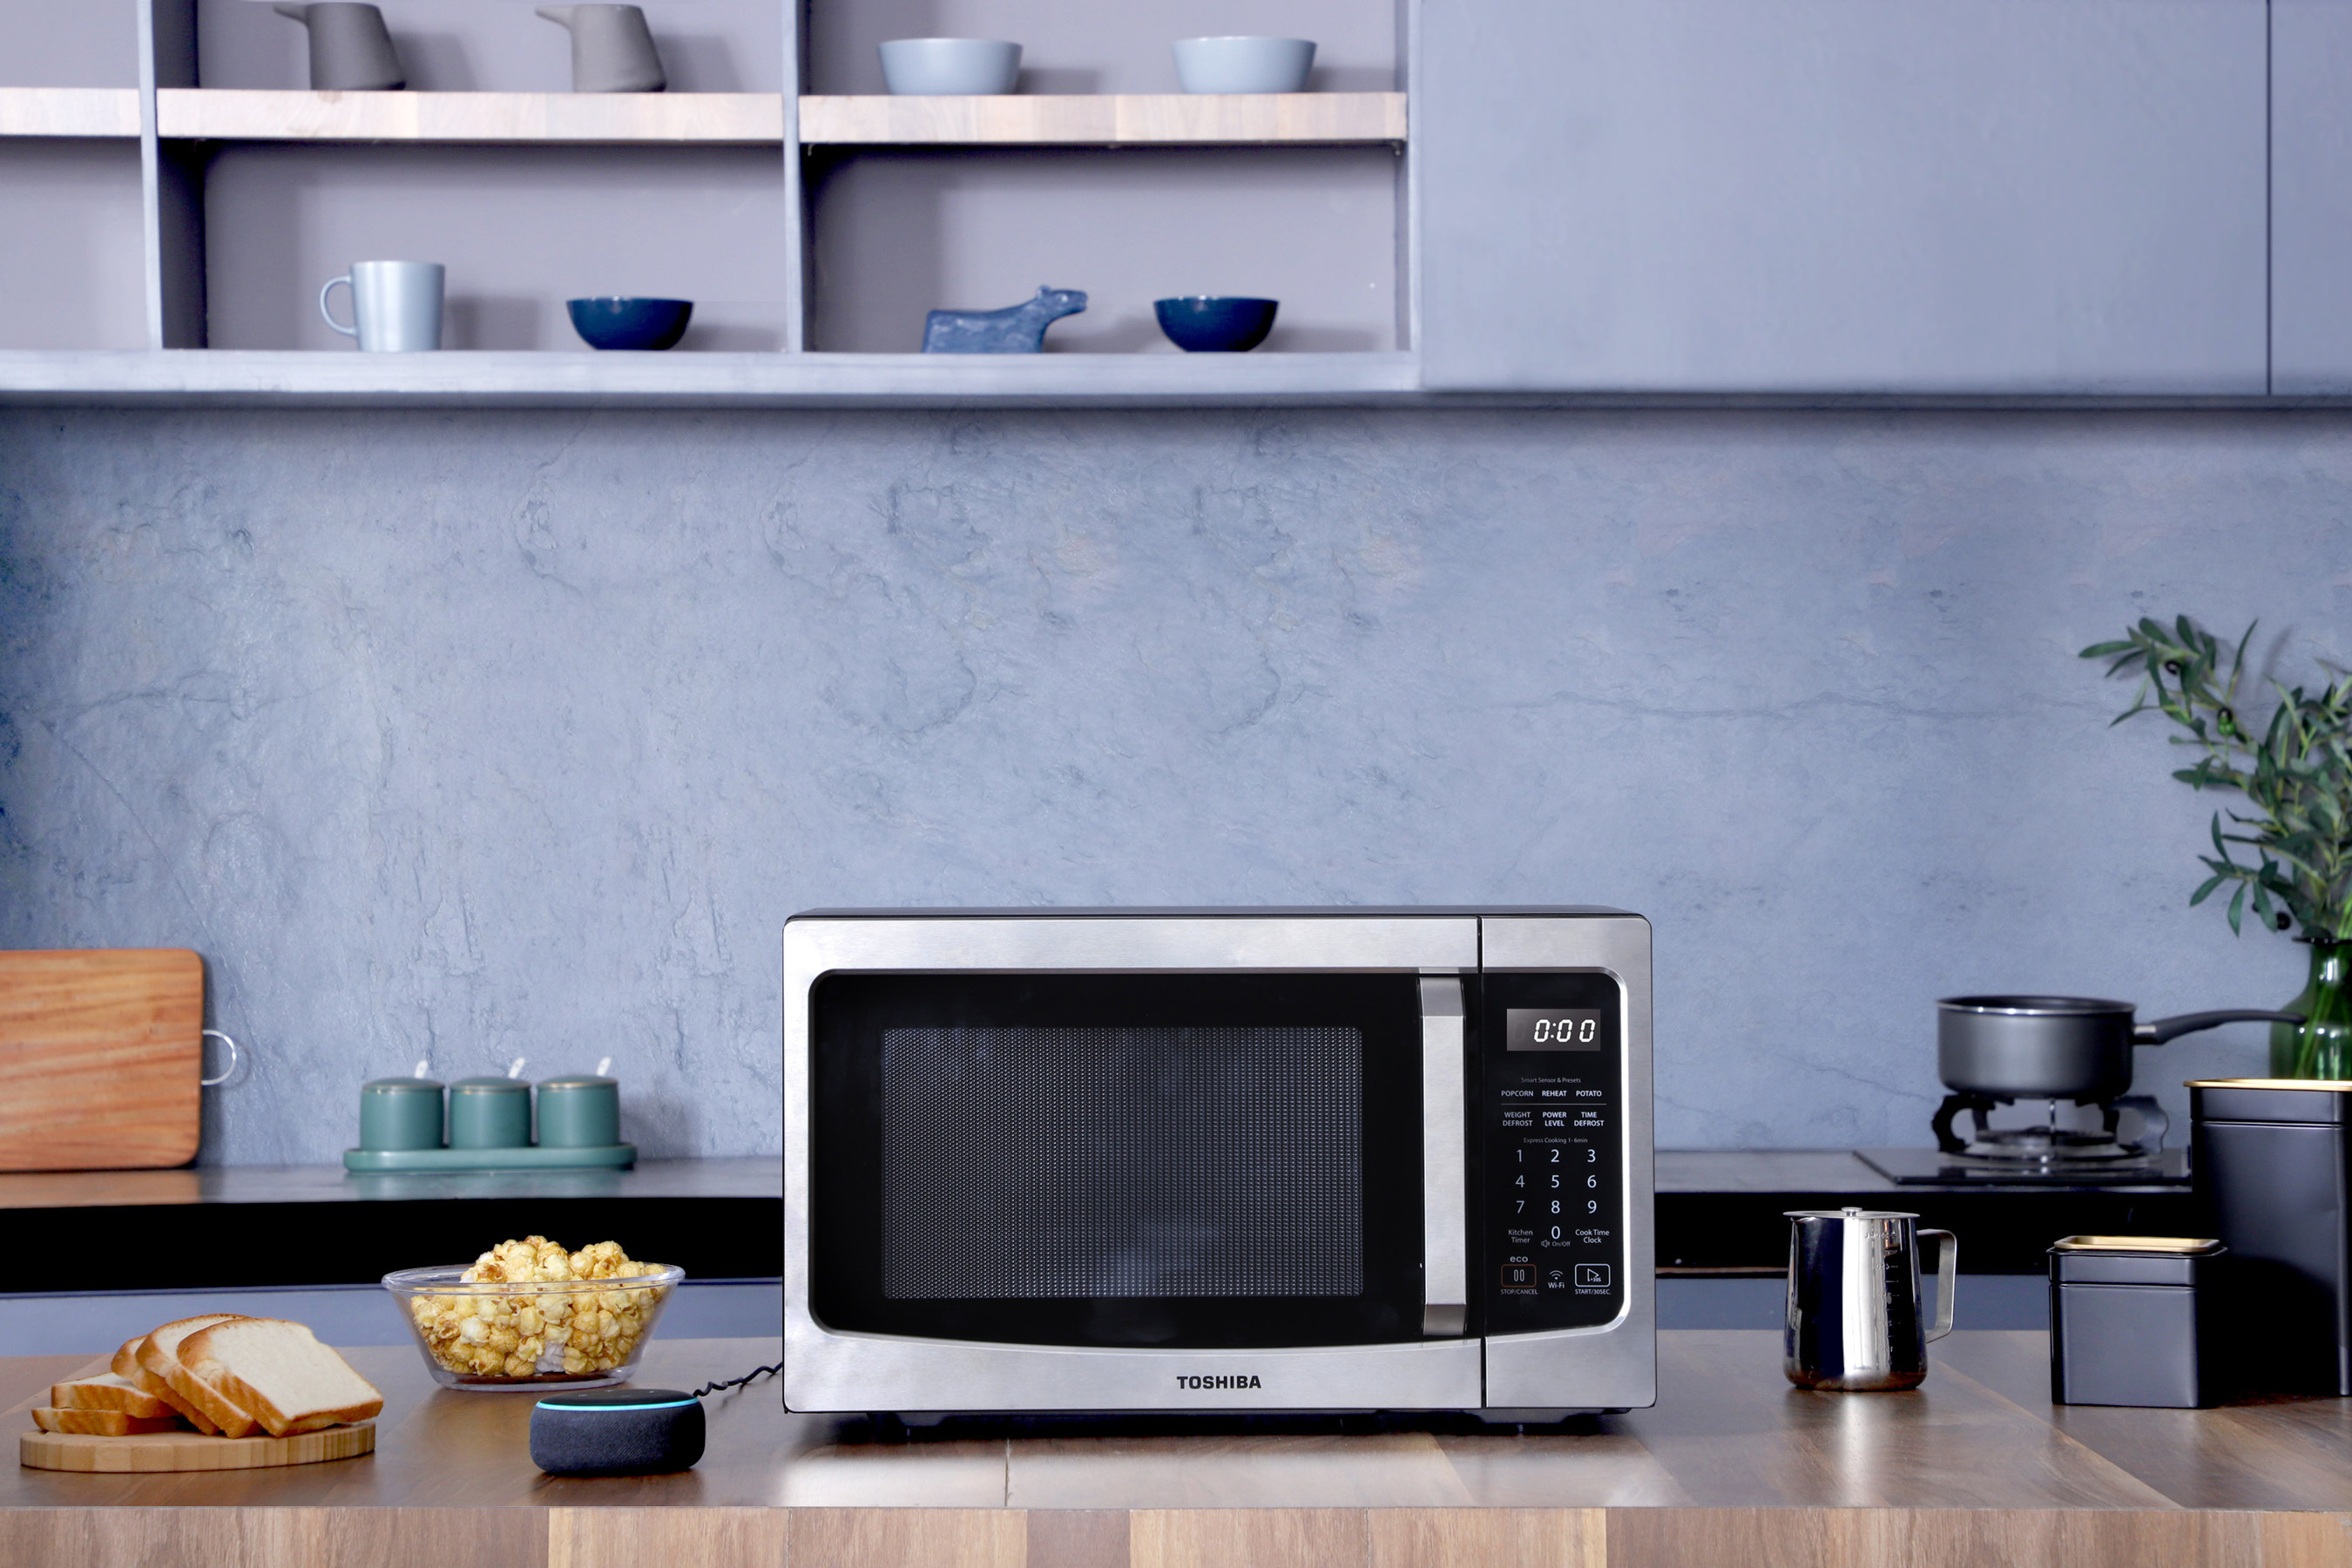 Типы свч. Микроволновая печь Microwave Oven. Microwave Oven Interior LG. Микроволновка Тошиба. Samsung Microwave Oven с вытяжкой.